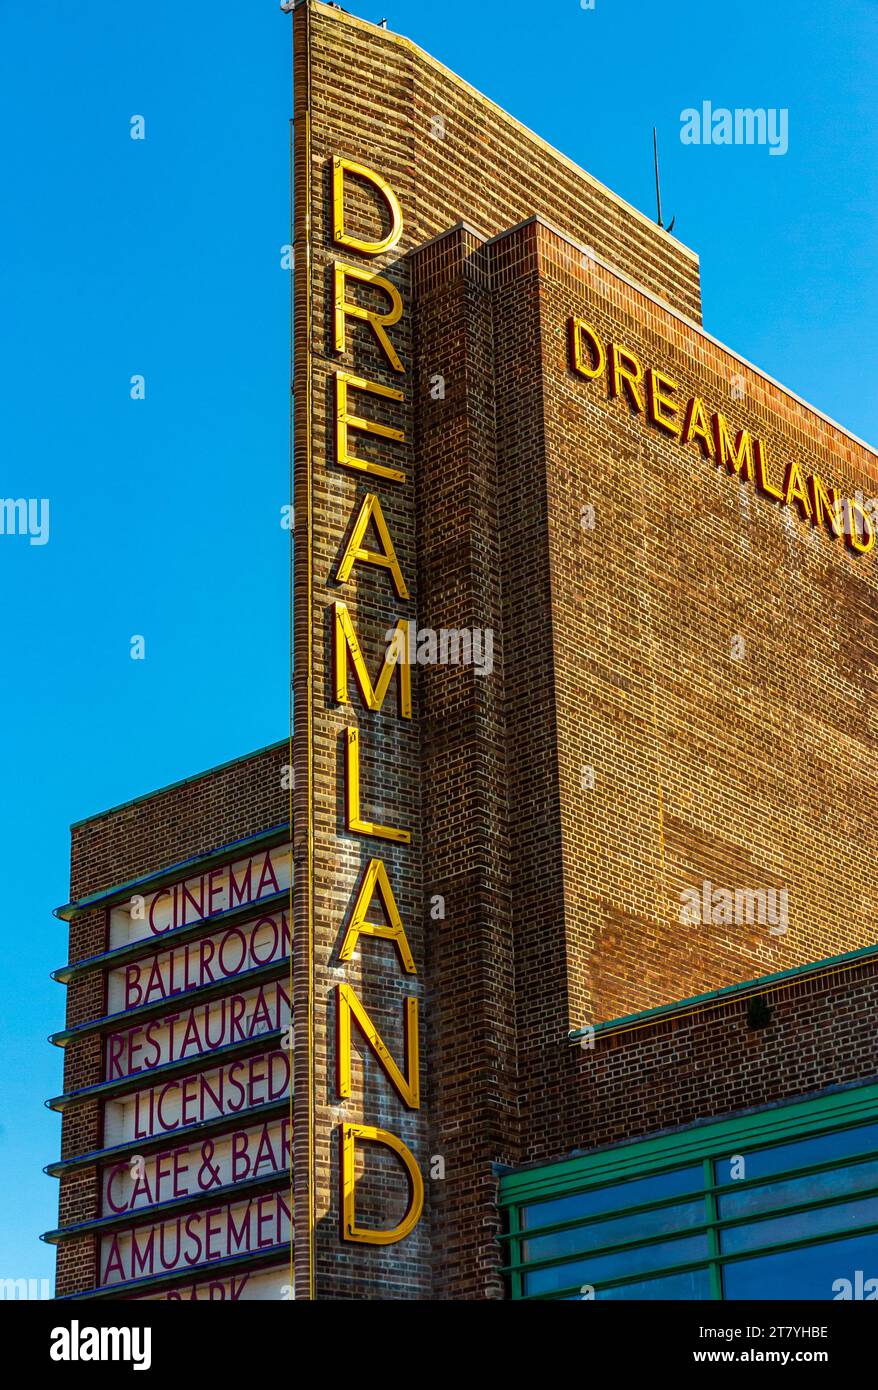 La tour de fin art déco à l'extérieur du cinéma Dreamland à Margate Kent Angleterre Royaume-Uni conçu par Julian Rudolph Leathart et W.F. Granger a ouvert ses portes en 1935 Banque D'Images